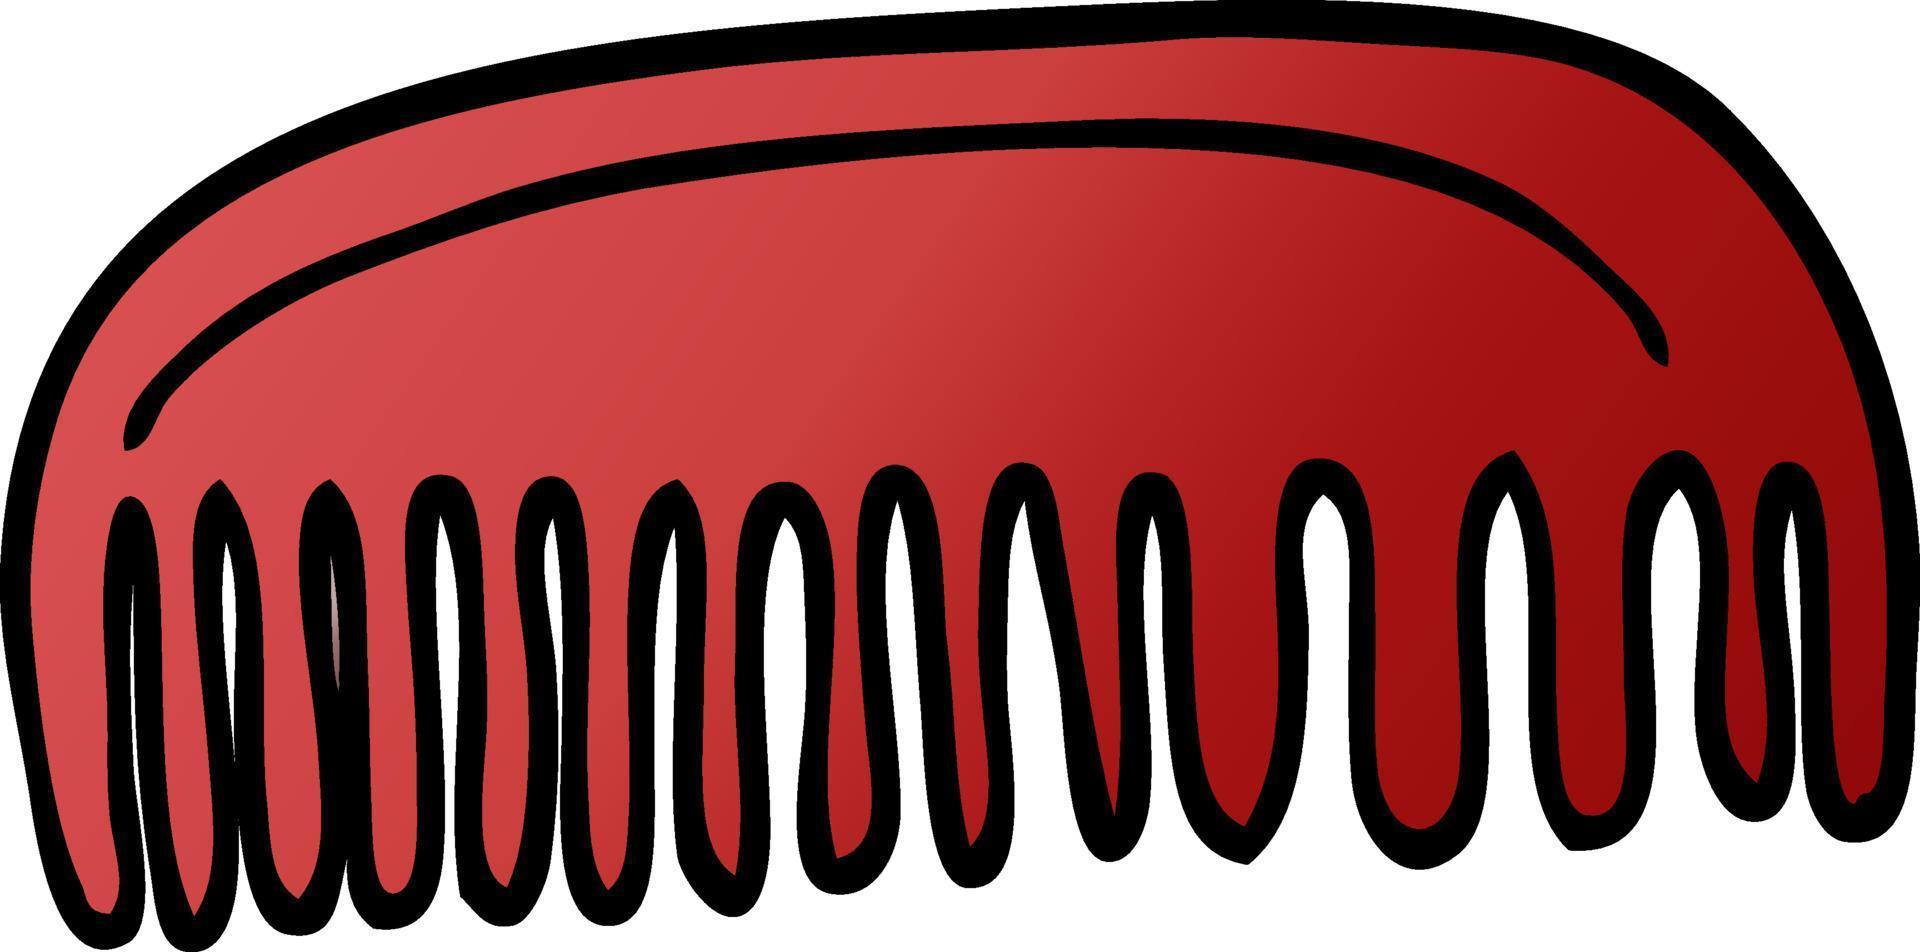 cartoon doodle plastic comb vector